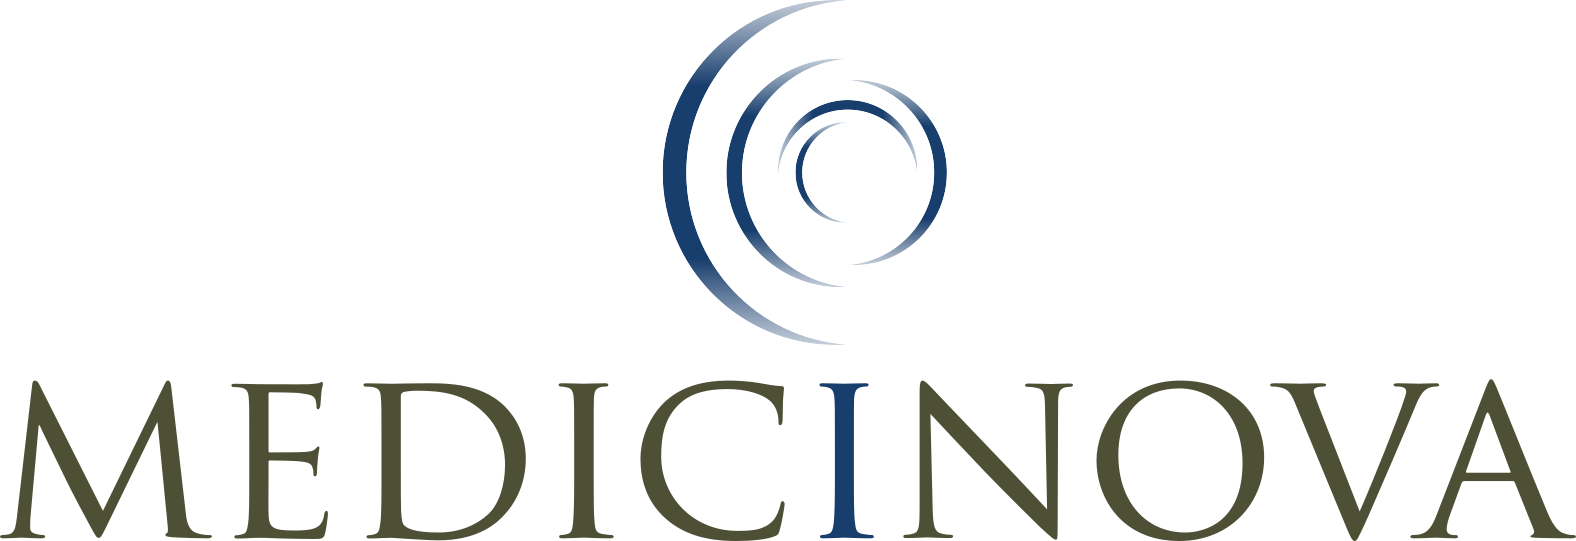 MediciNova logo large (transparent PNG)